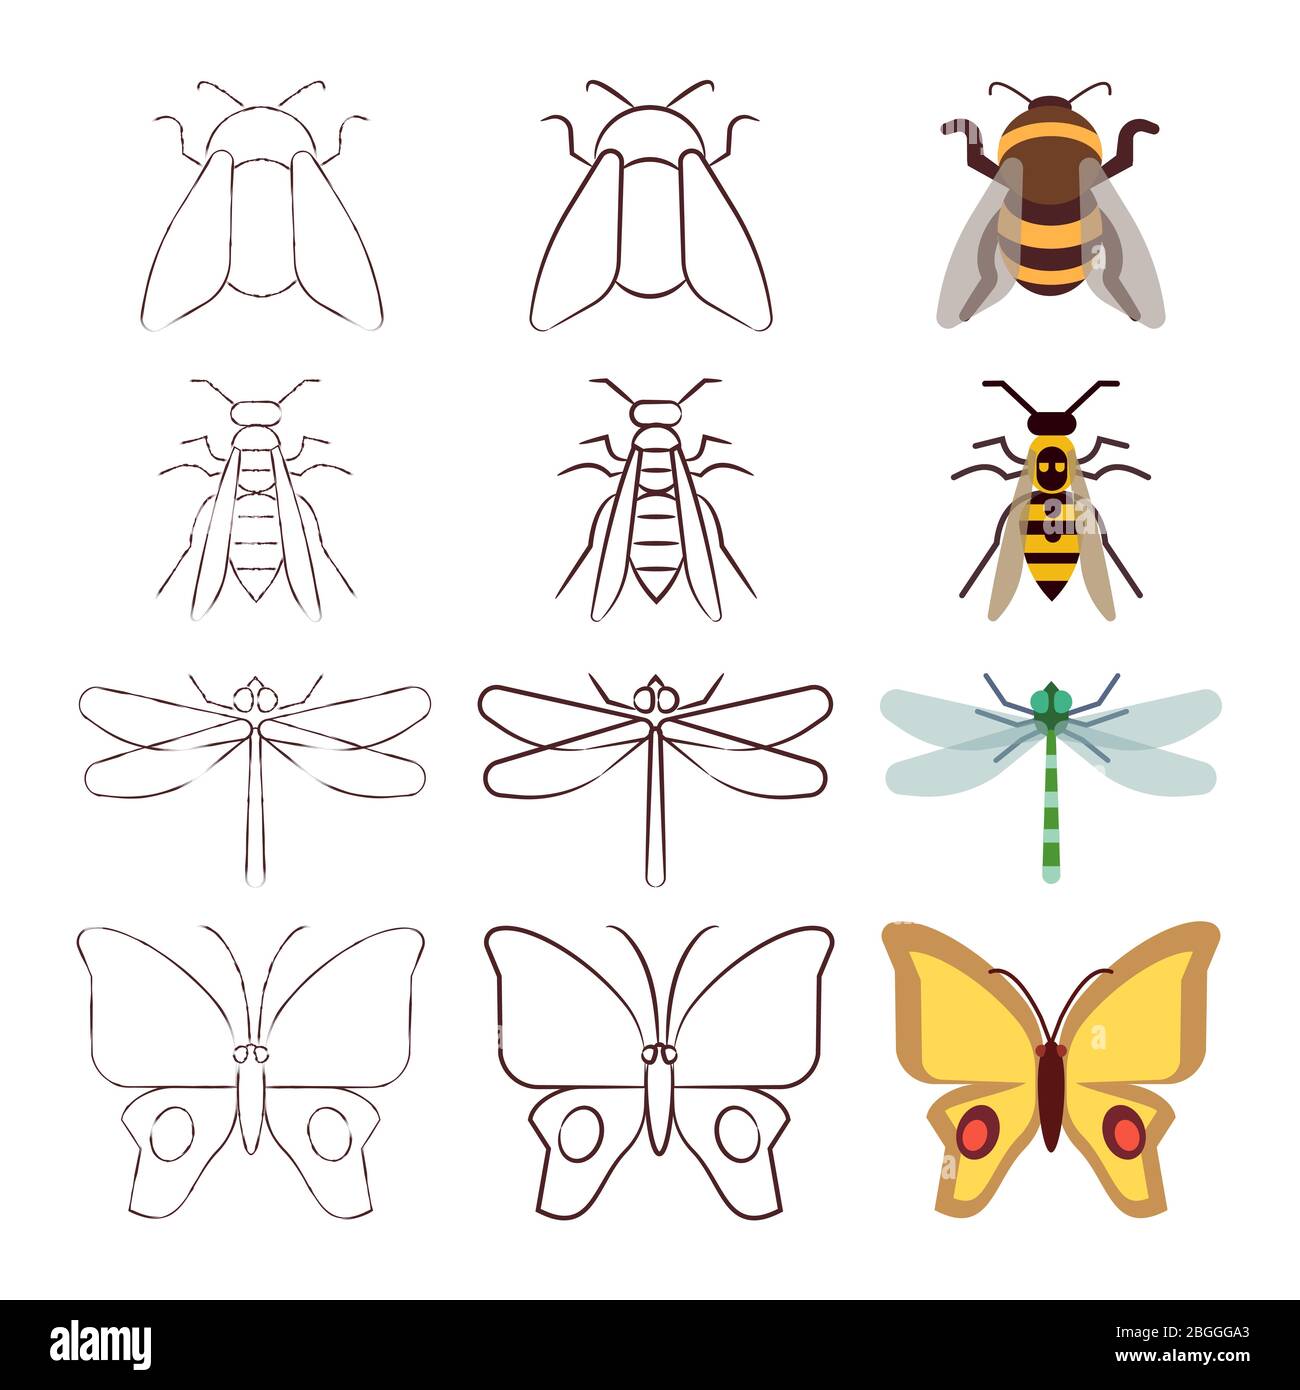 Disegno a matita, linea e raccolta di insetti piani. Illustrazione vettoriale Illustrazione Vettoriale